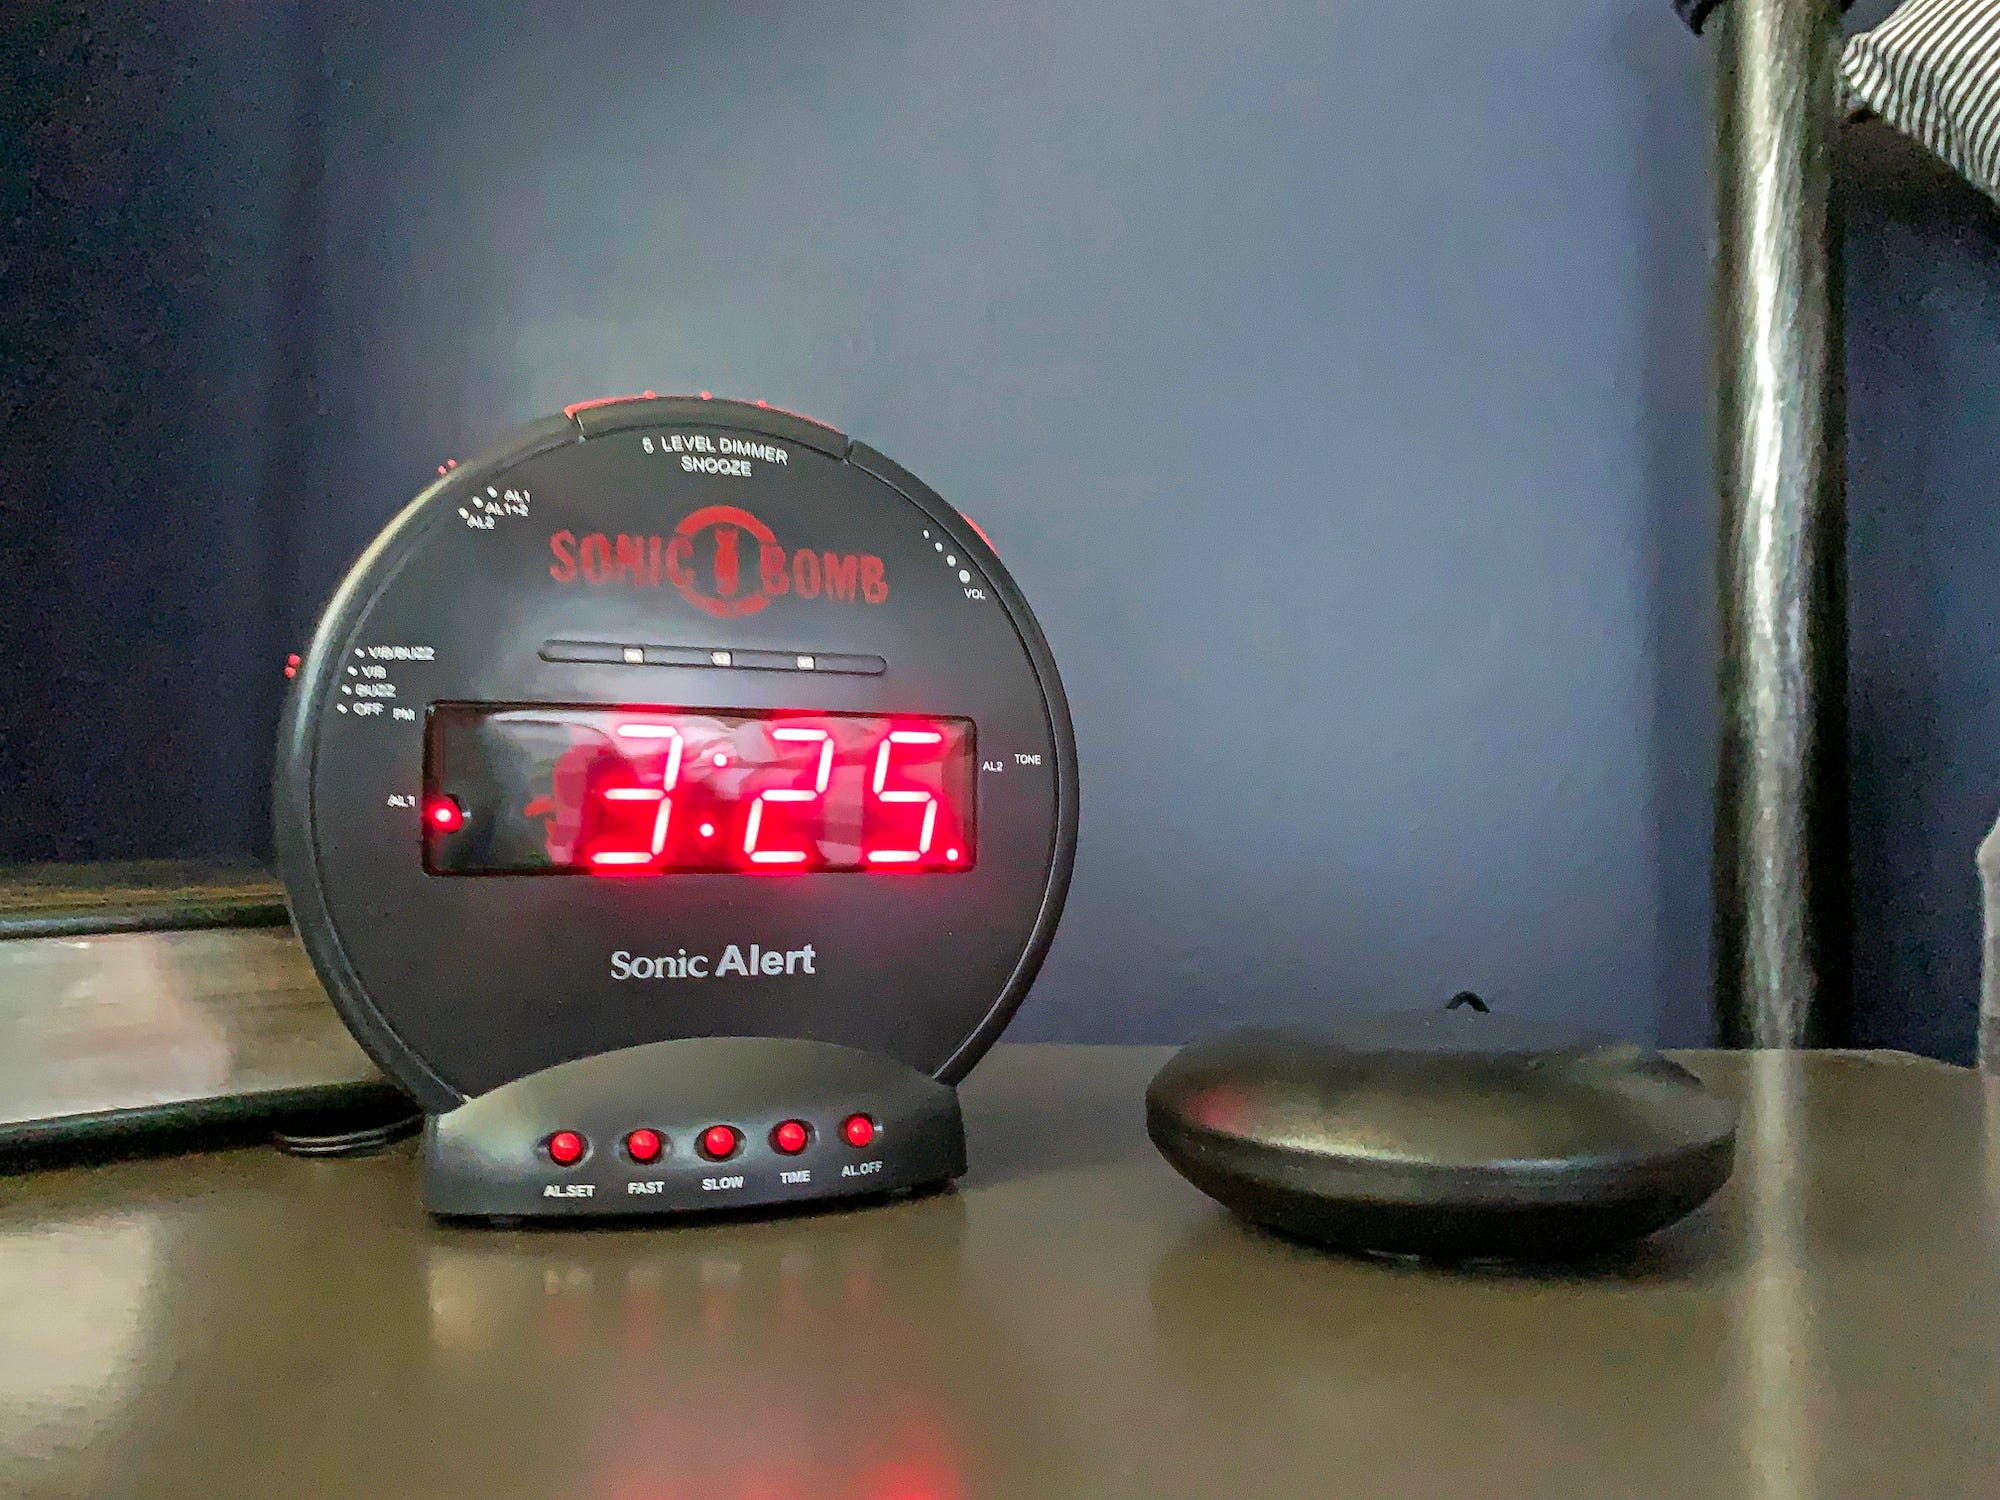 Der Sonic Alert Sonic Bomb Dual Extra-Loud Wecker mit Bed Shaker steht auf einem Nachttisch und zeigt 3:25 an.